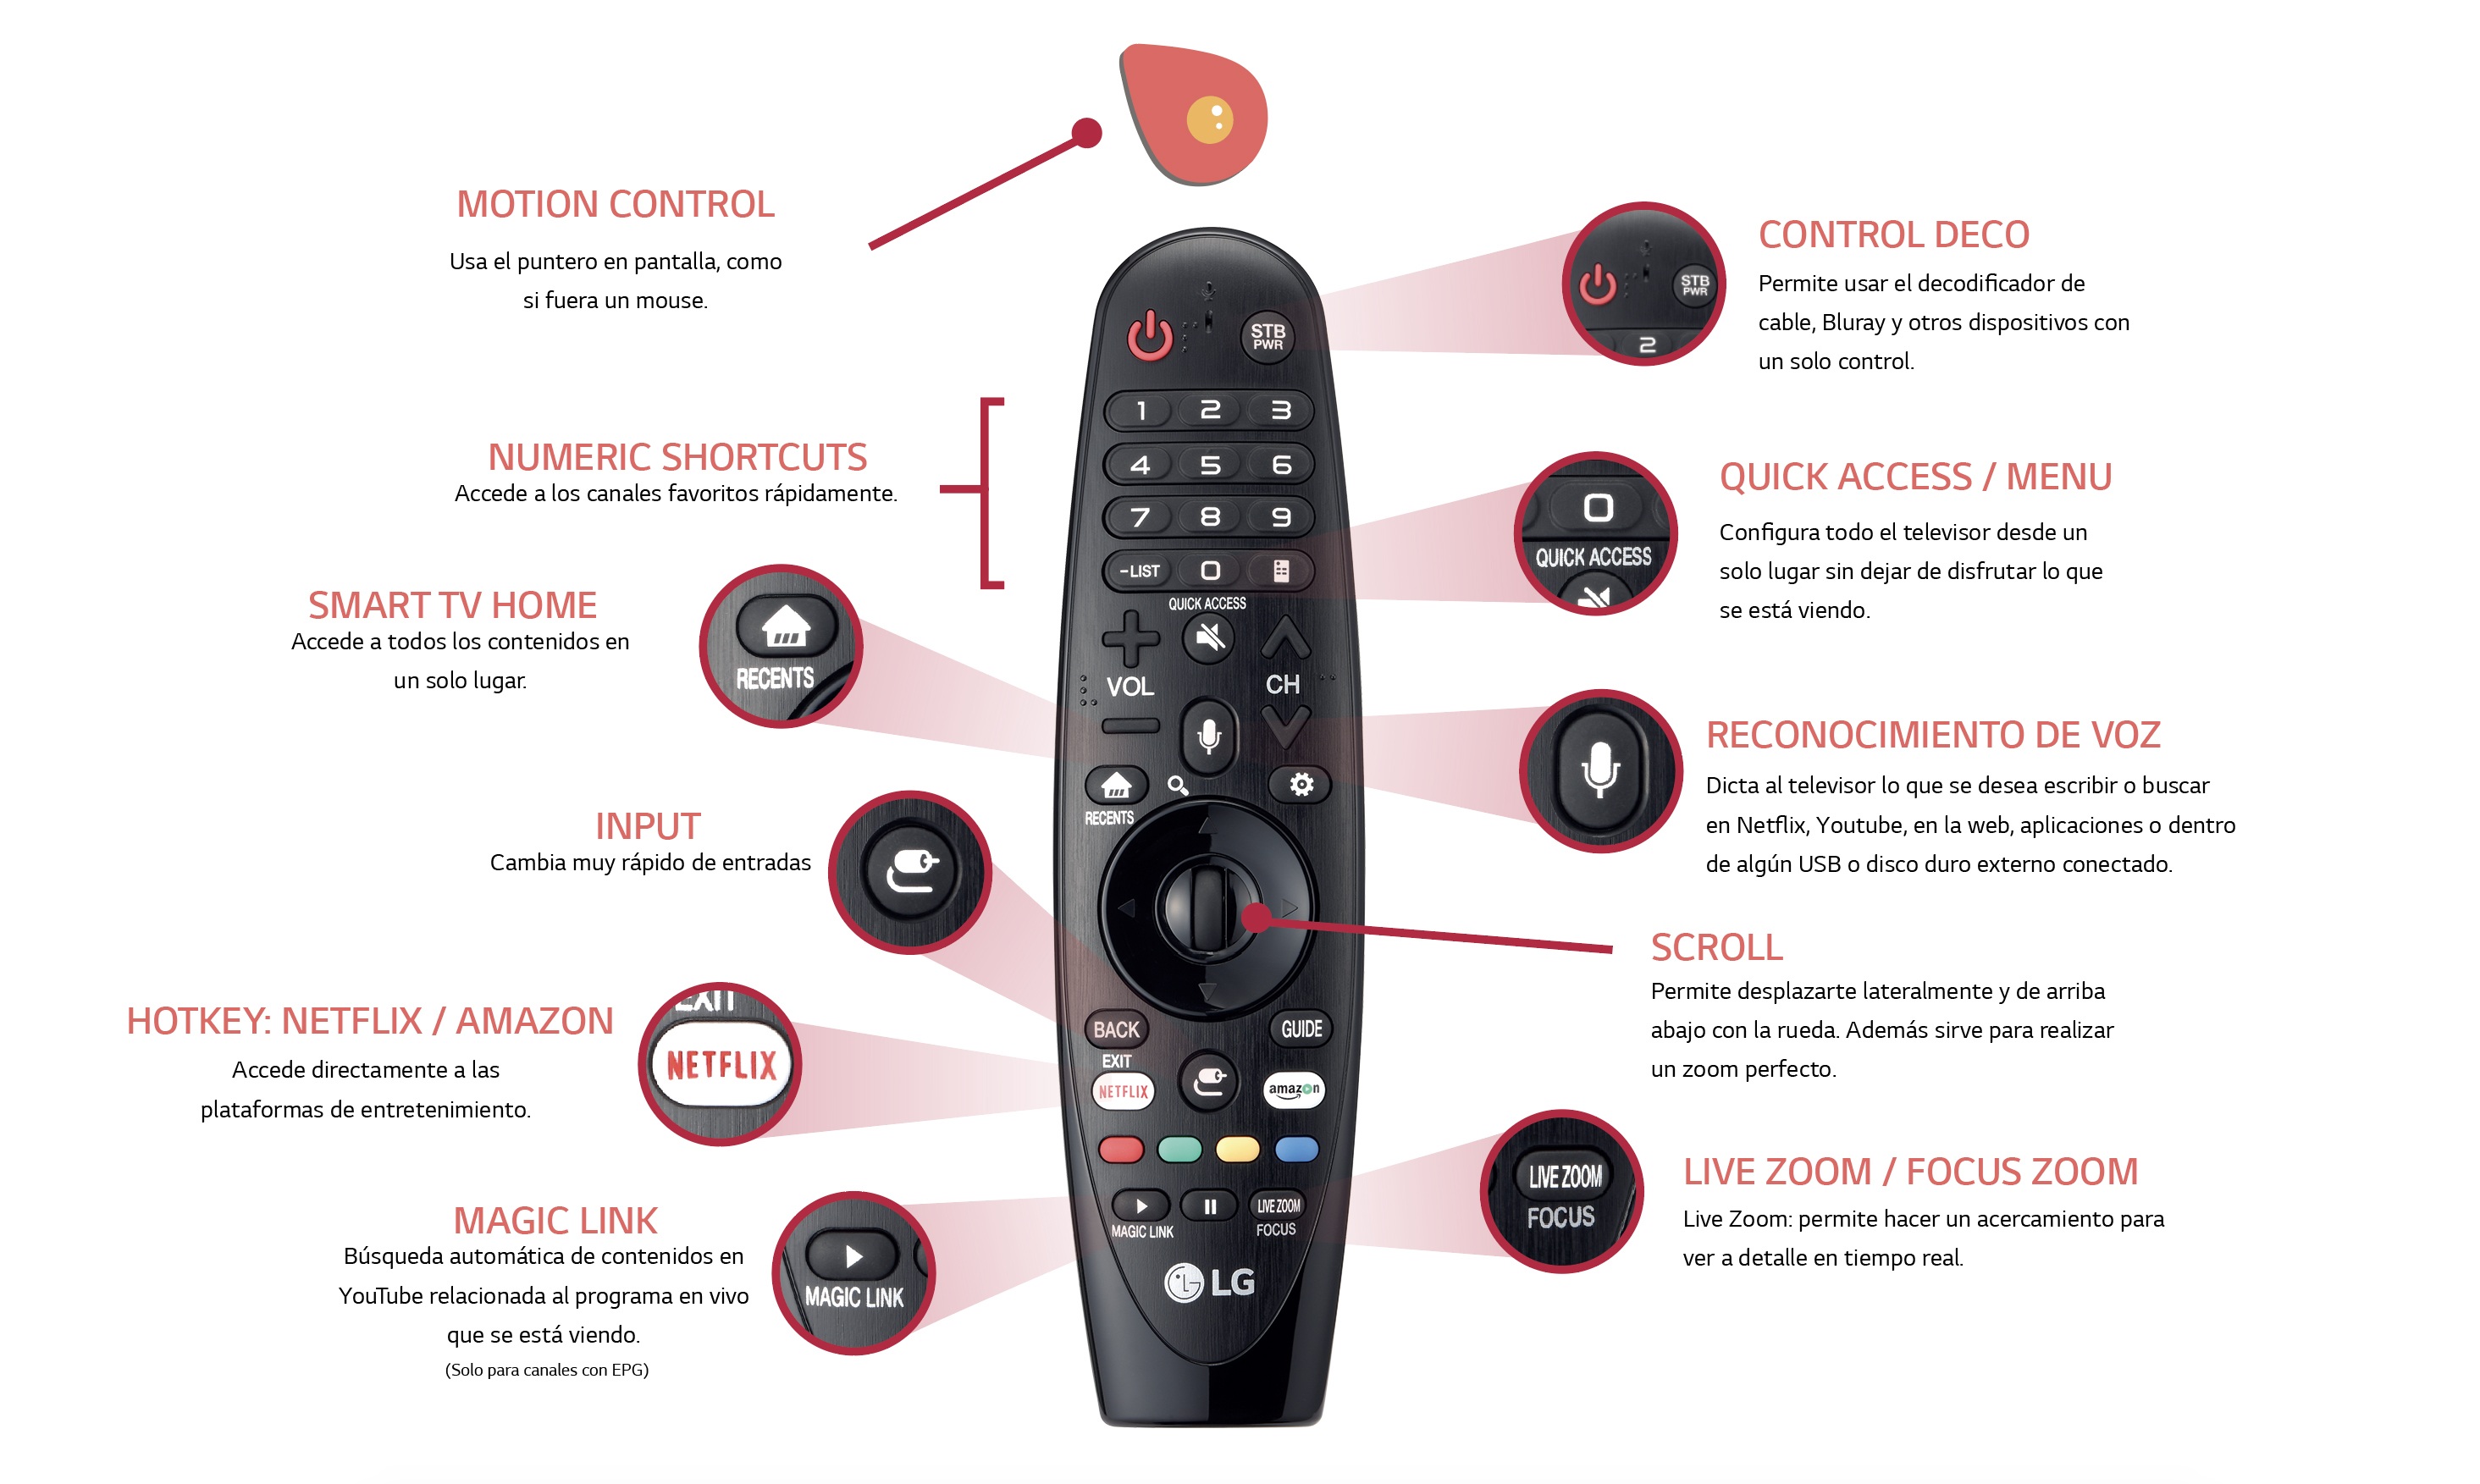 LG explica funciones de su remoto que lo hacen único el mercado de Smart TV – Karlos Perú